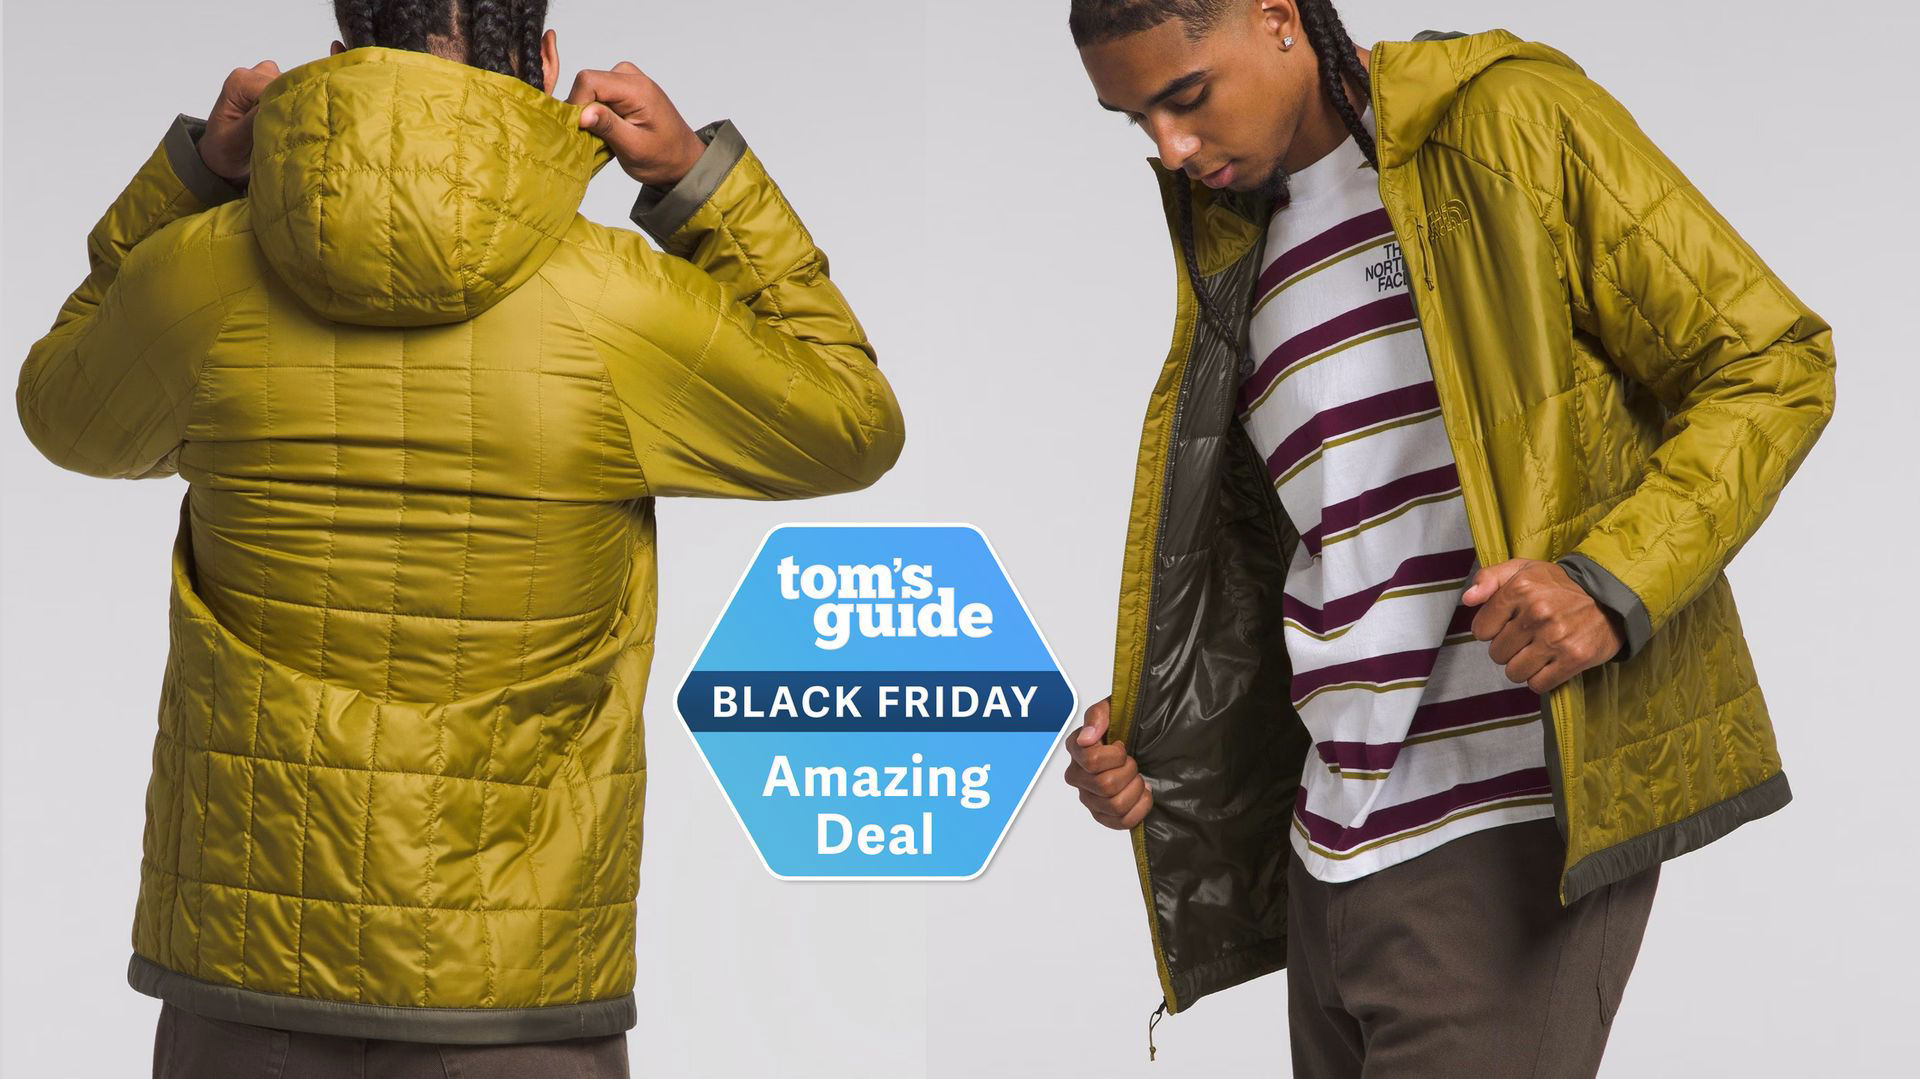 North Face Black Friday deals — 5 sales I’d grab right now